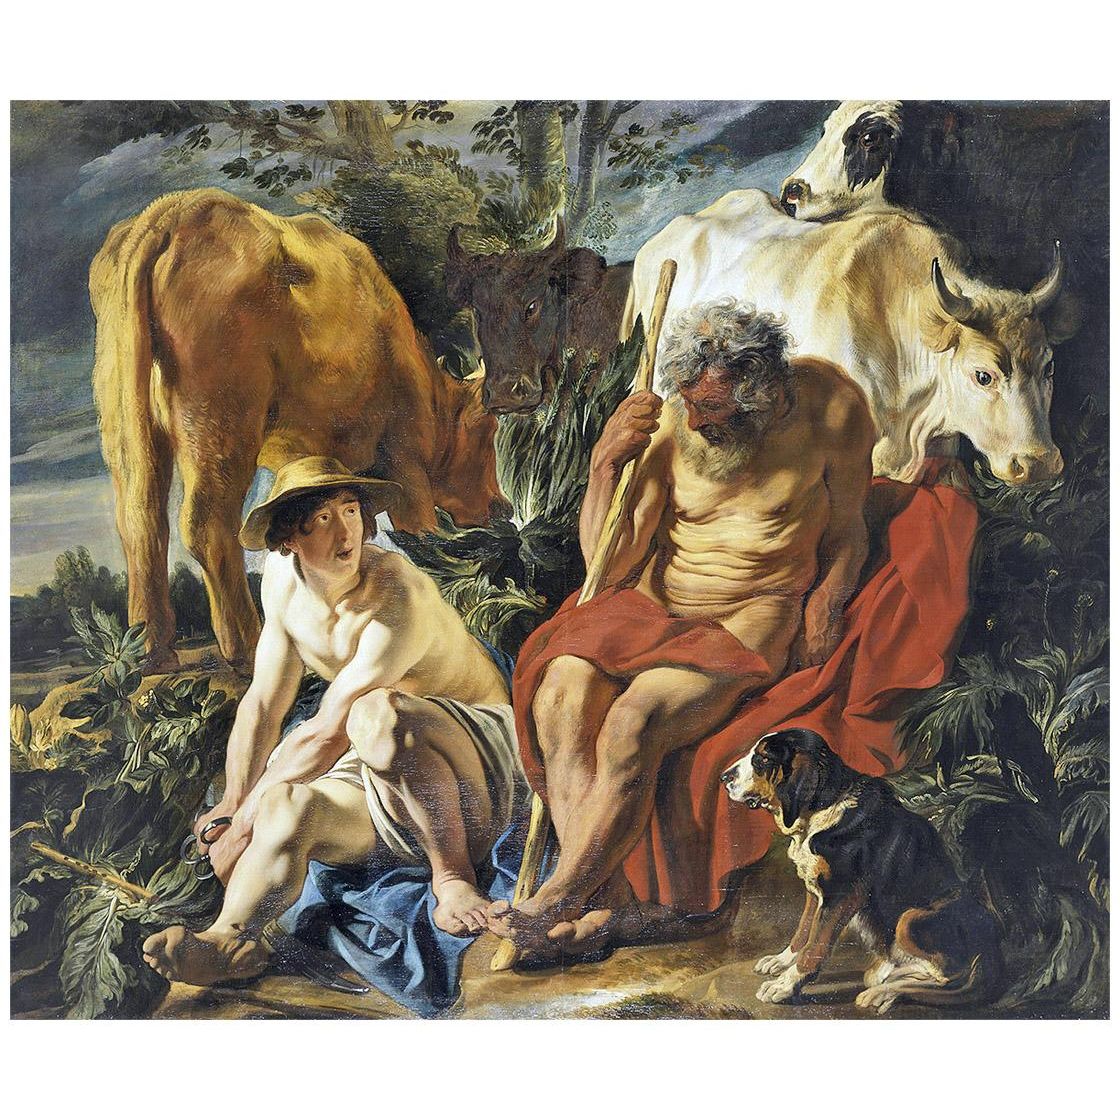 Jacob Jordaens. Mercure and Argus. 1620. Musee des Beaux Arts Lyon